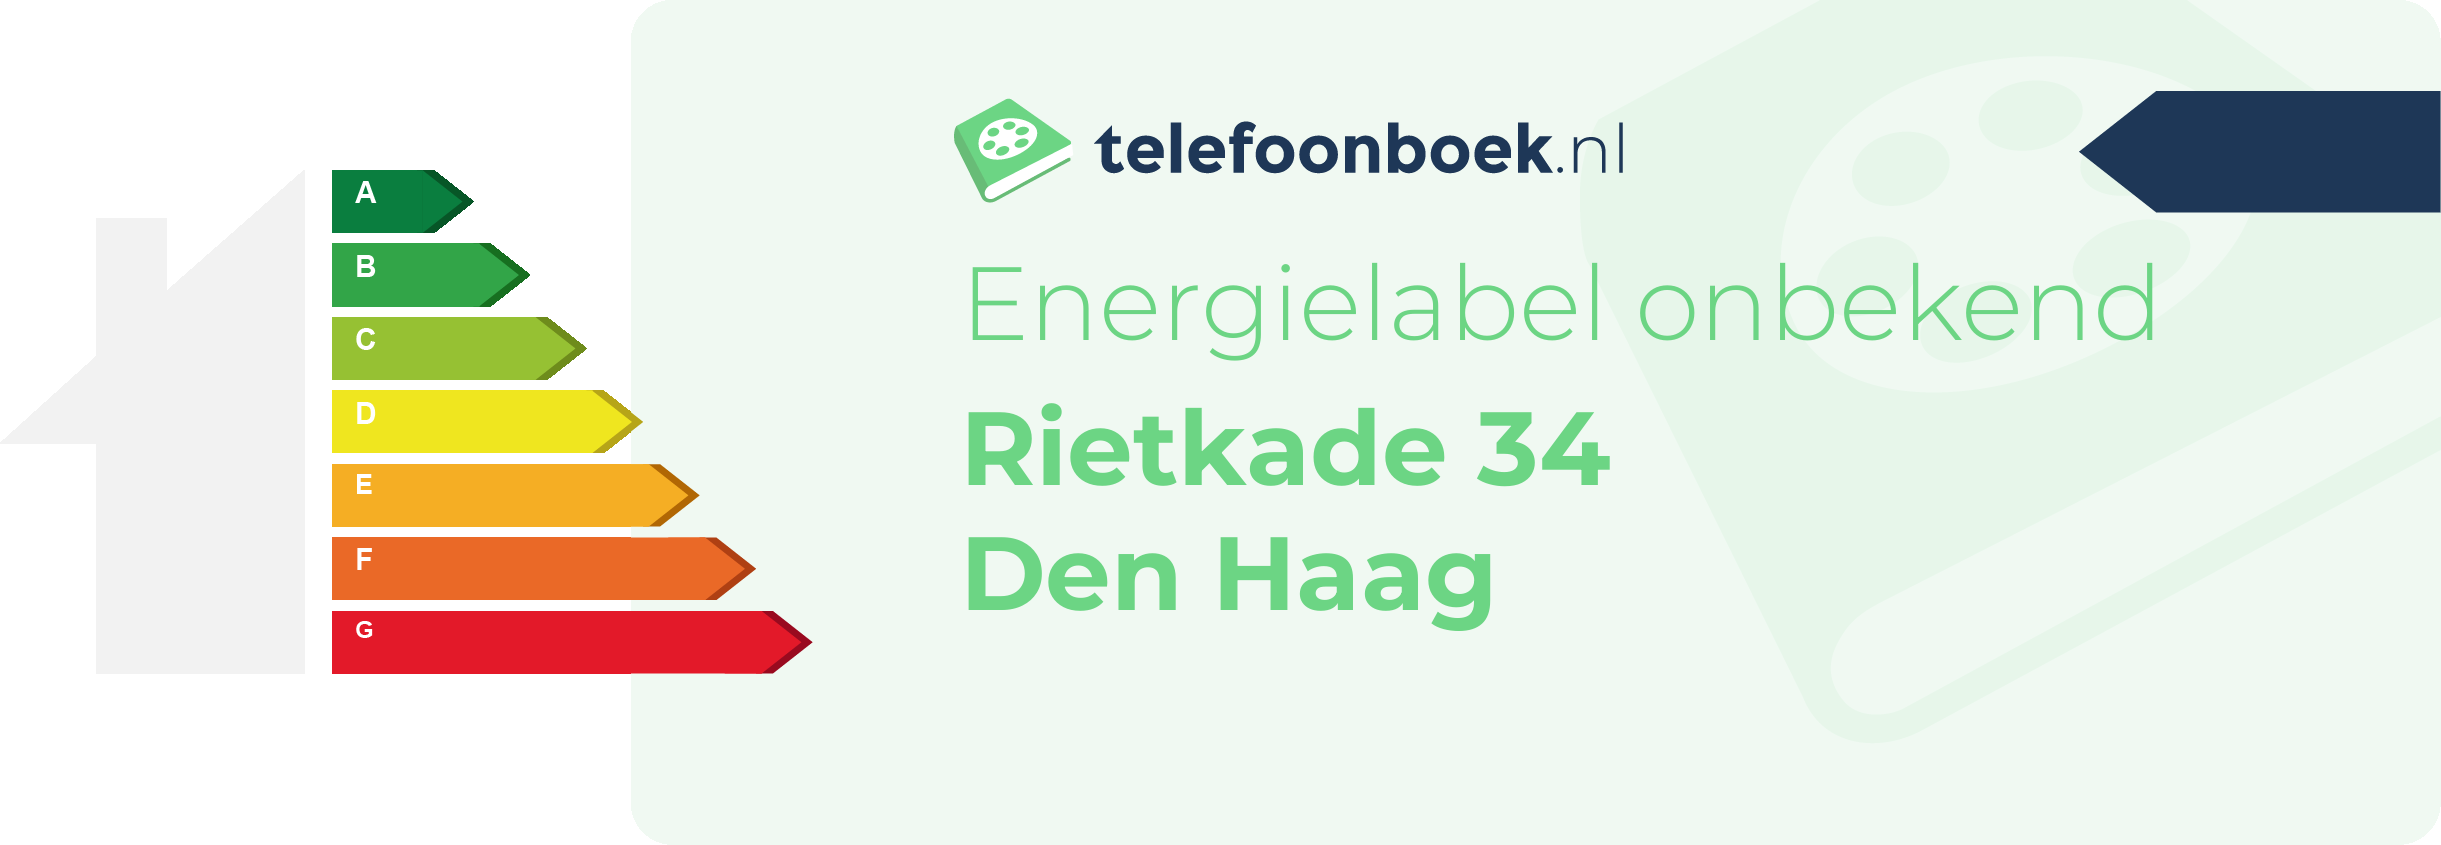 Energielabel Rietkade 34 Den Haag